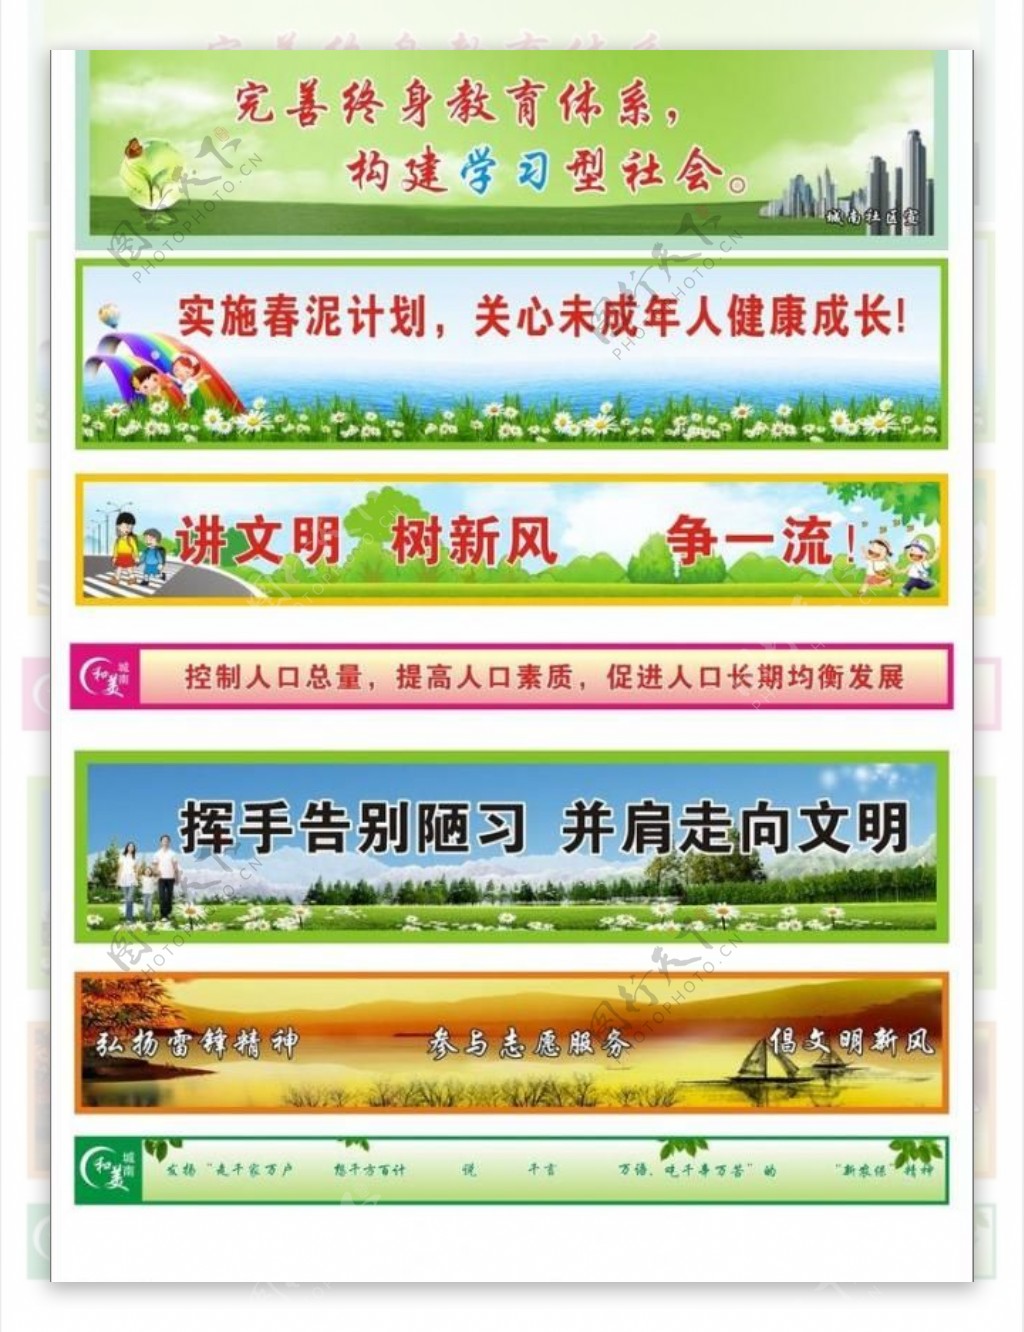 村社区文化标语墙体广告图片